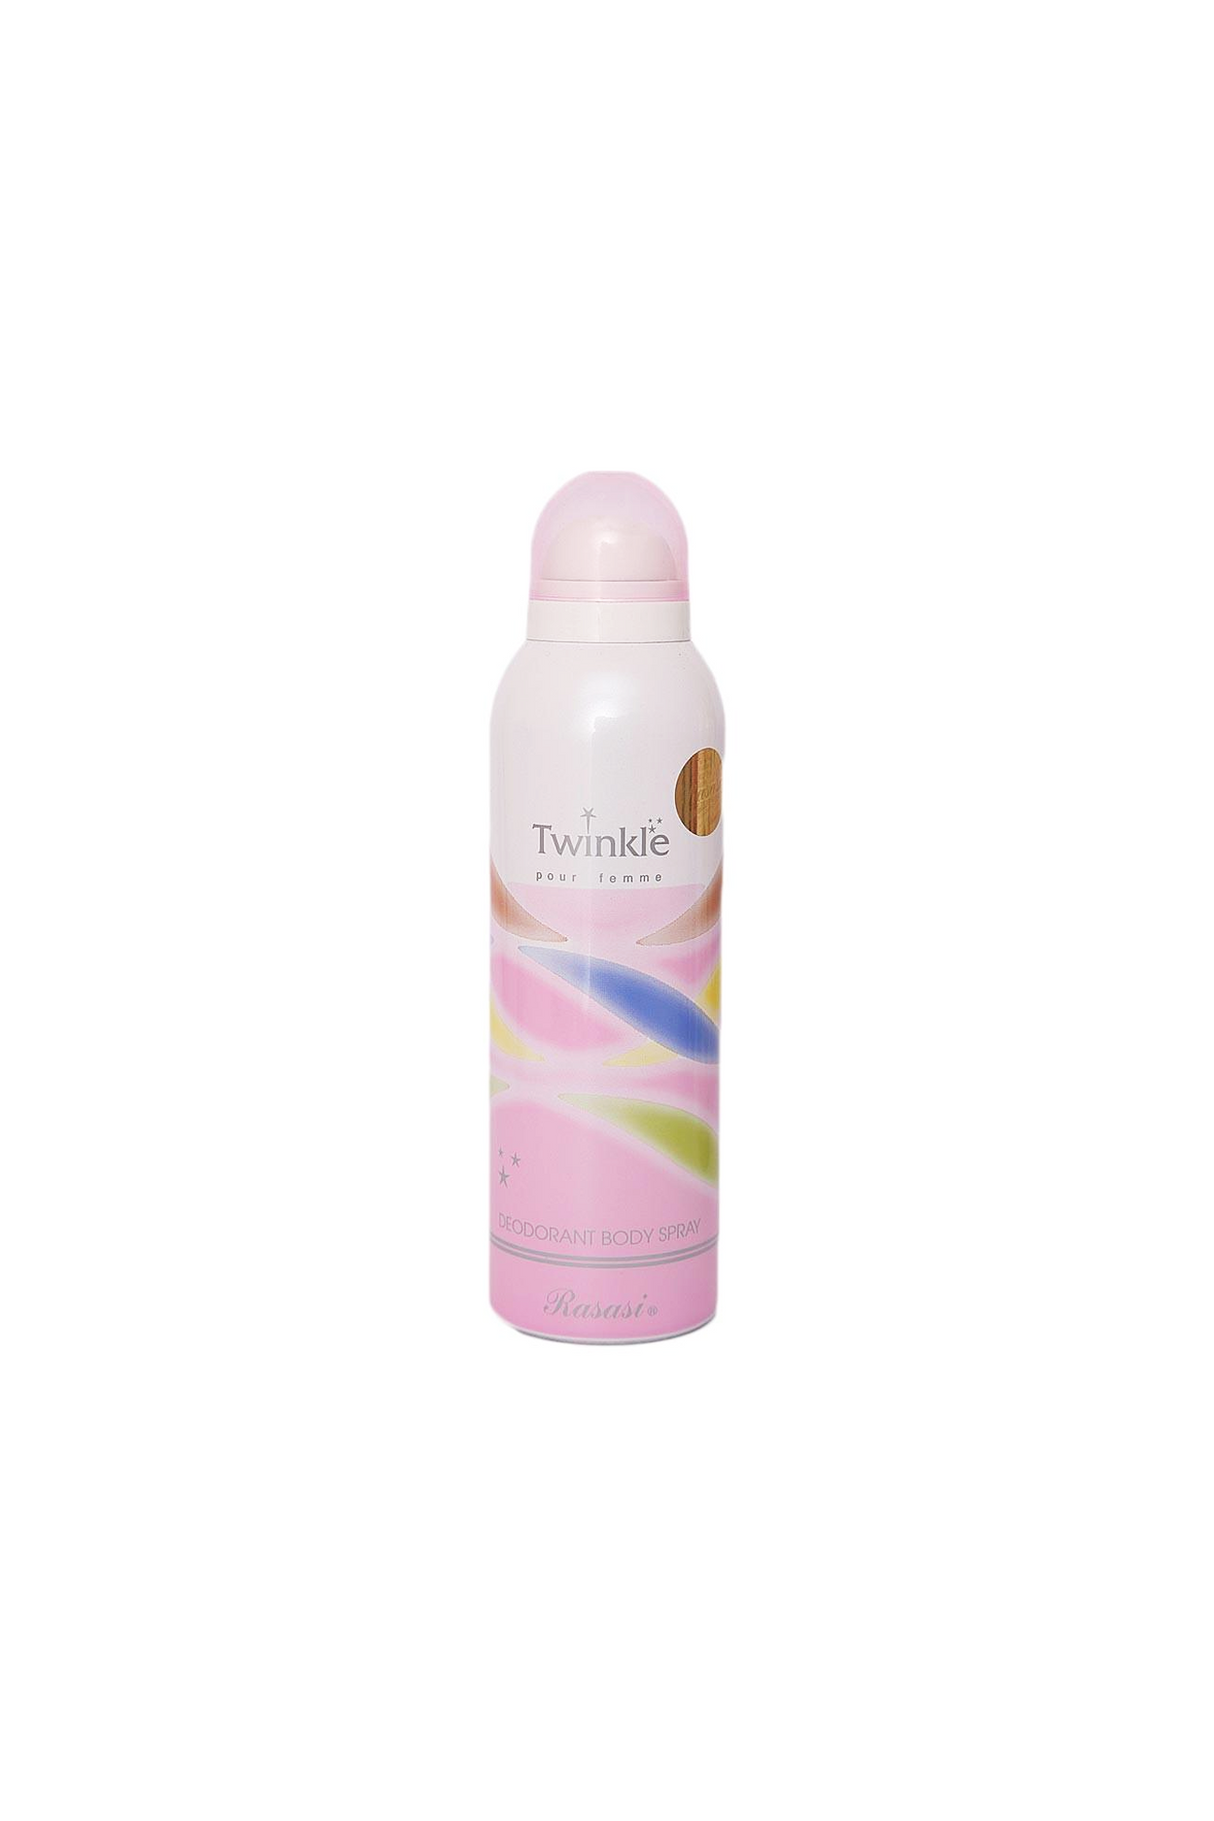 rasasi twinkle deodorant body spray 200ml for women